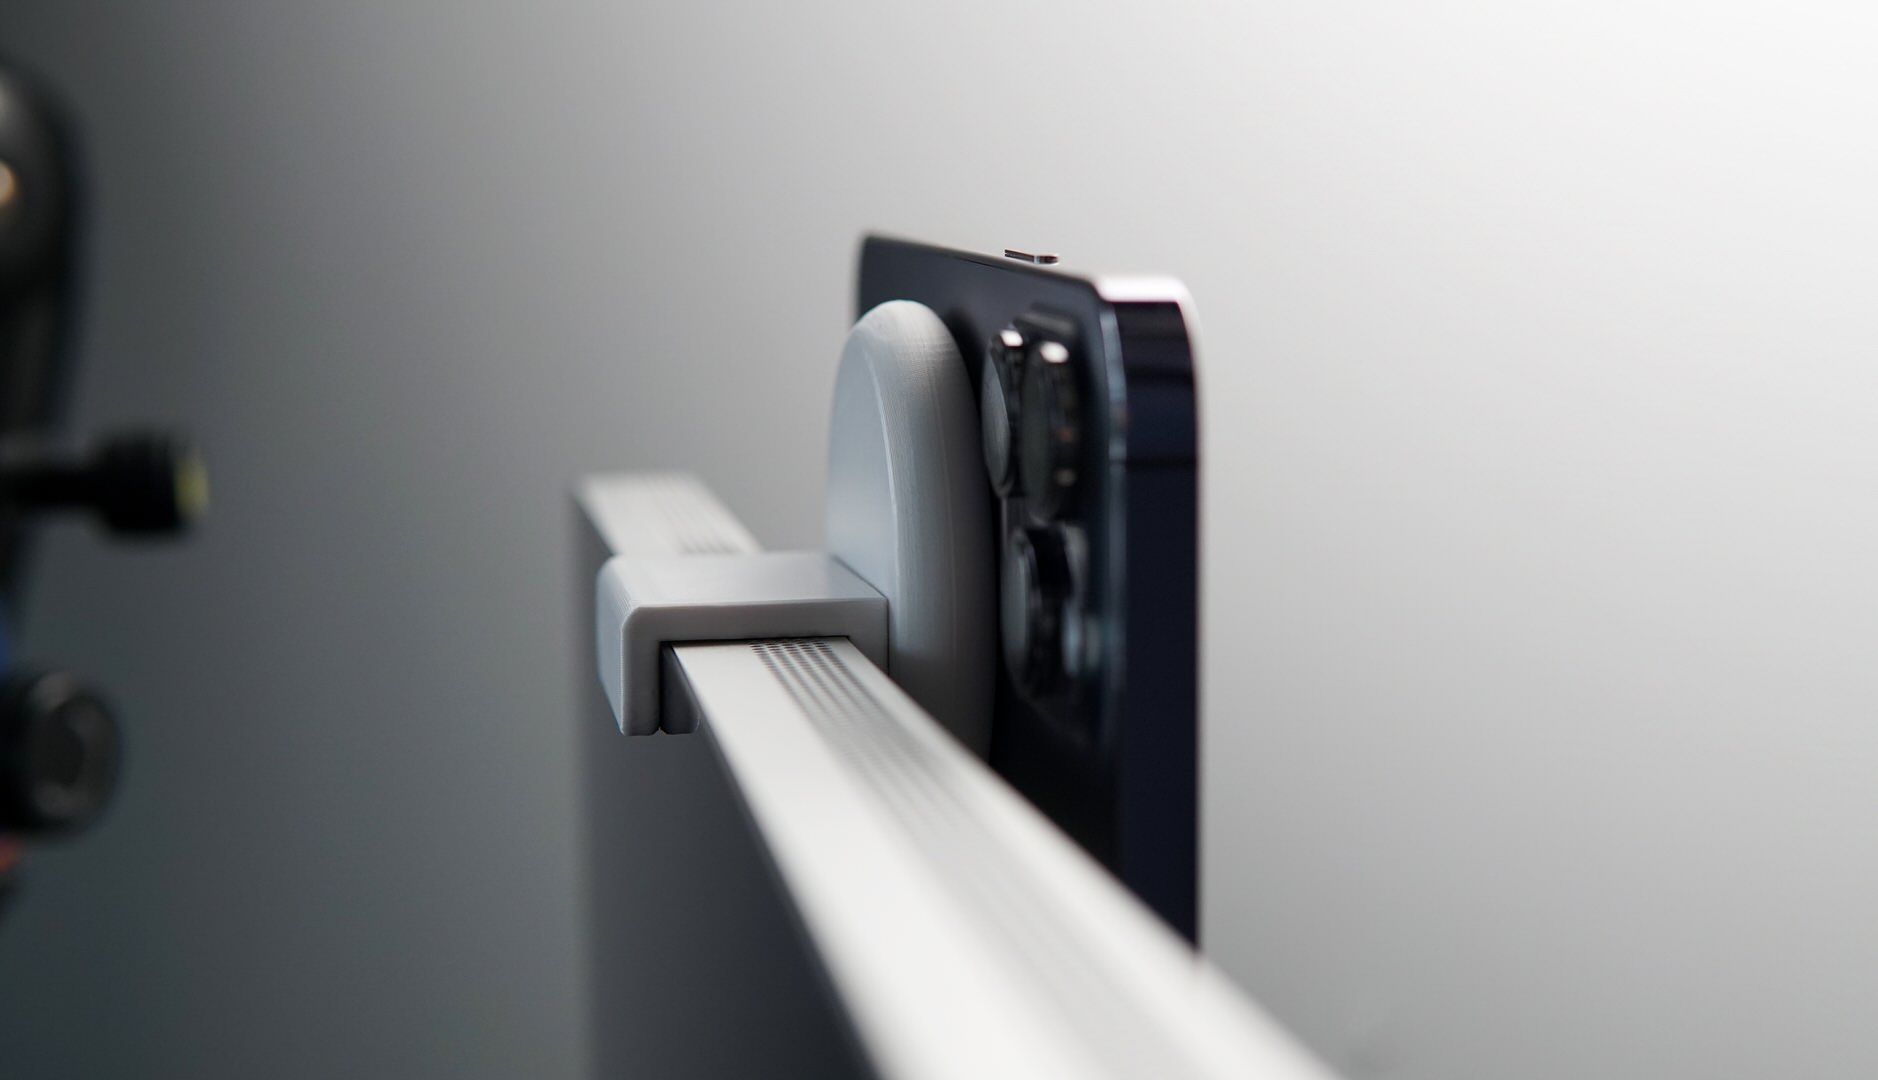 Bild zeigt iPhone, das an der Oberseite vom Monitor hängt.